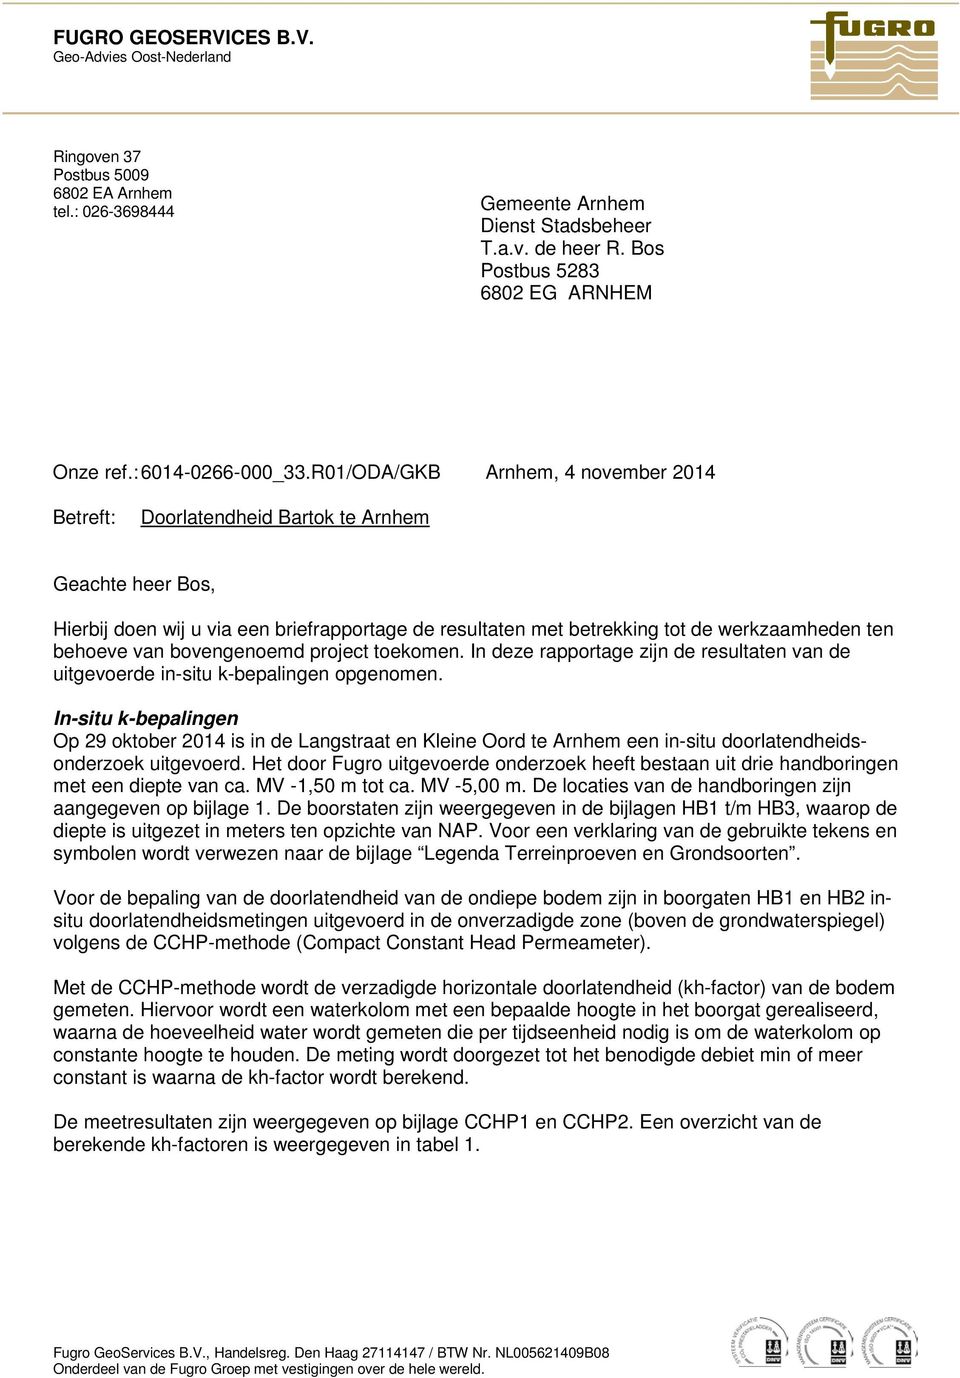 R01/ODA/GKB Arnhem, 4 november 2014 Betreft: Doorlatendheid Bartok te Arnhem Geachte heer Bos, Hierbij doen wij u via een briefrapportage de resultaten met betrekking tot de werkzaamheden ten behoeve